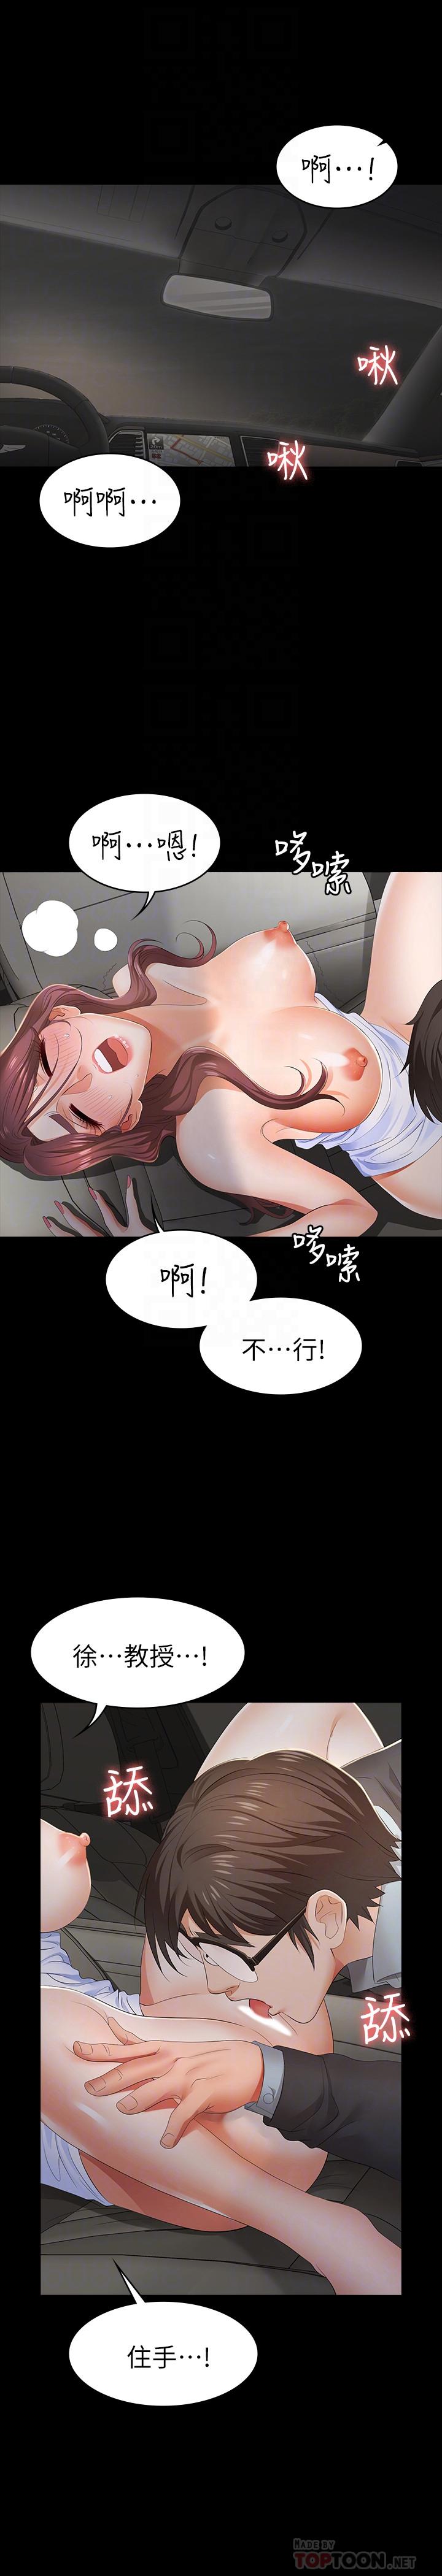 韩国污漫画 交換遊戲 第14话-幽会时相遇的两夫妻 4